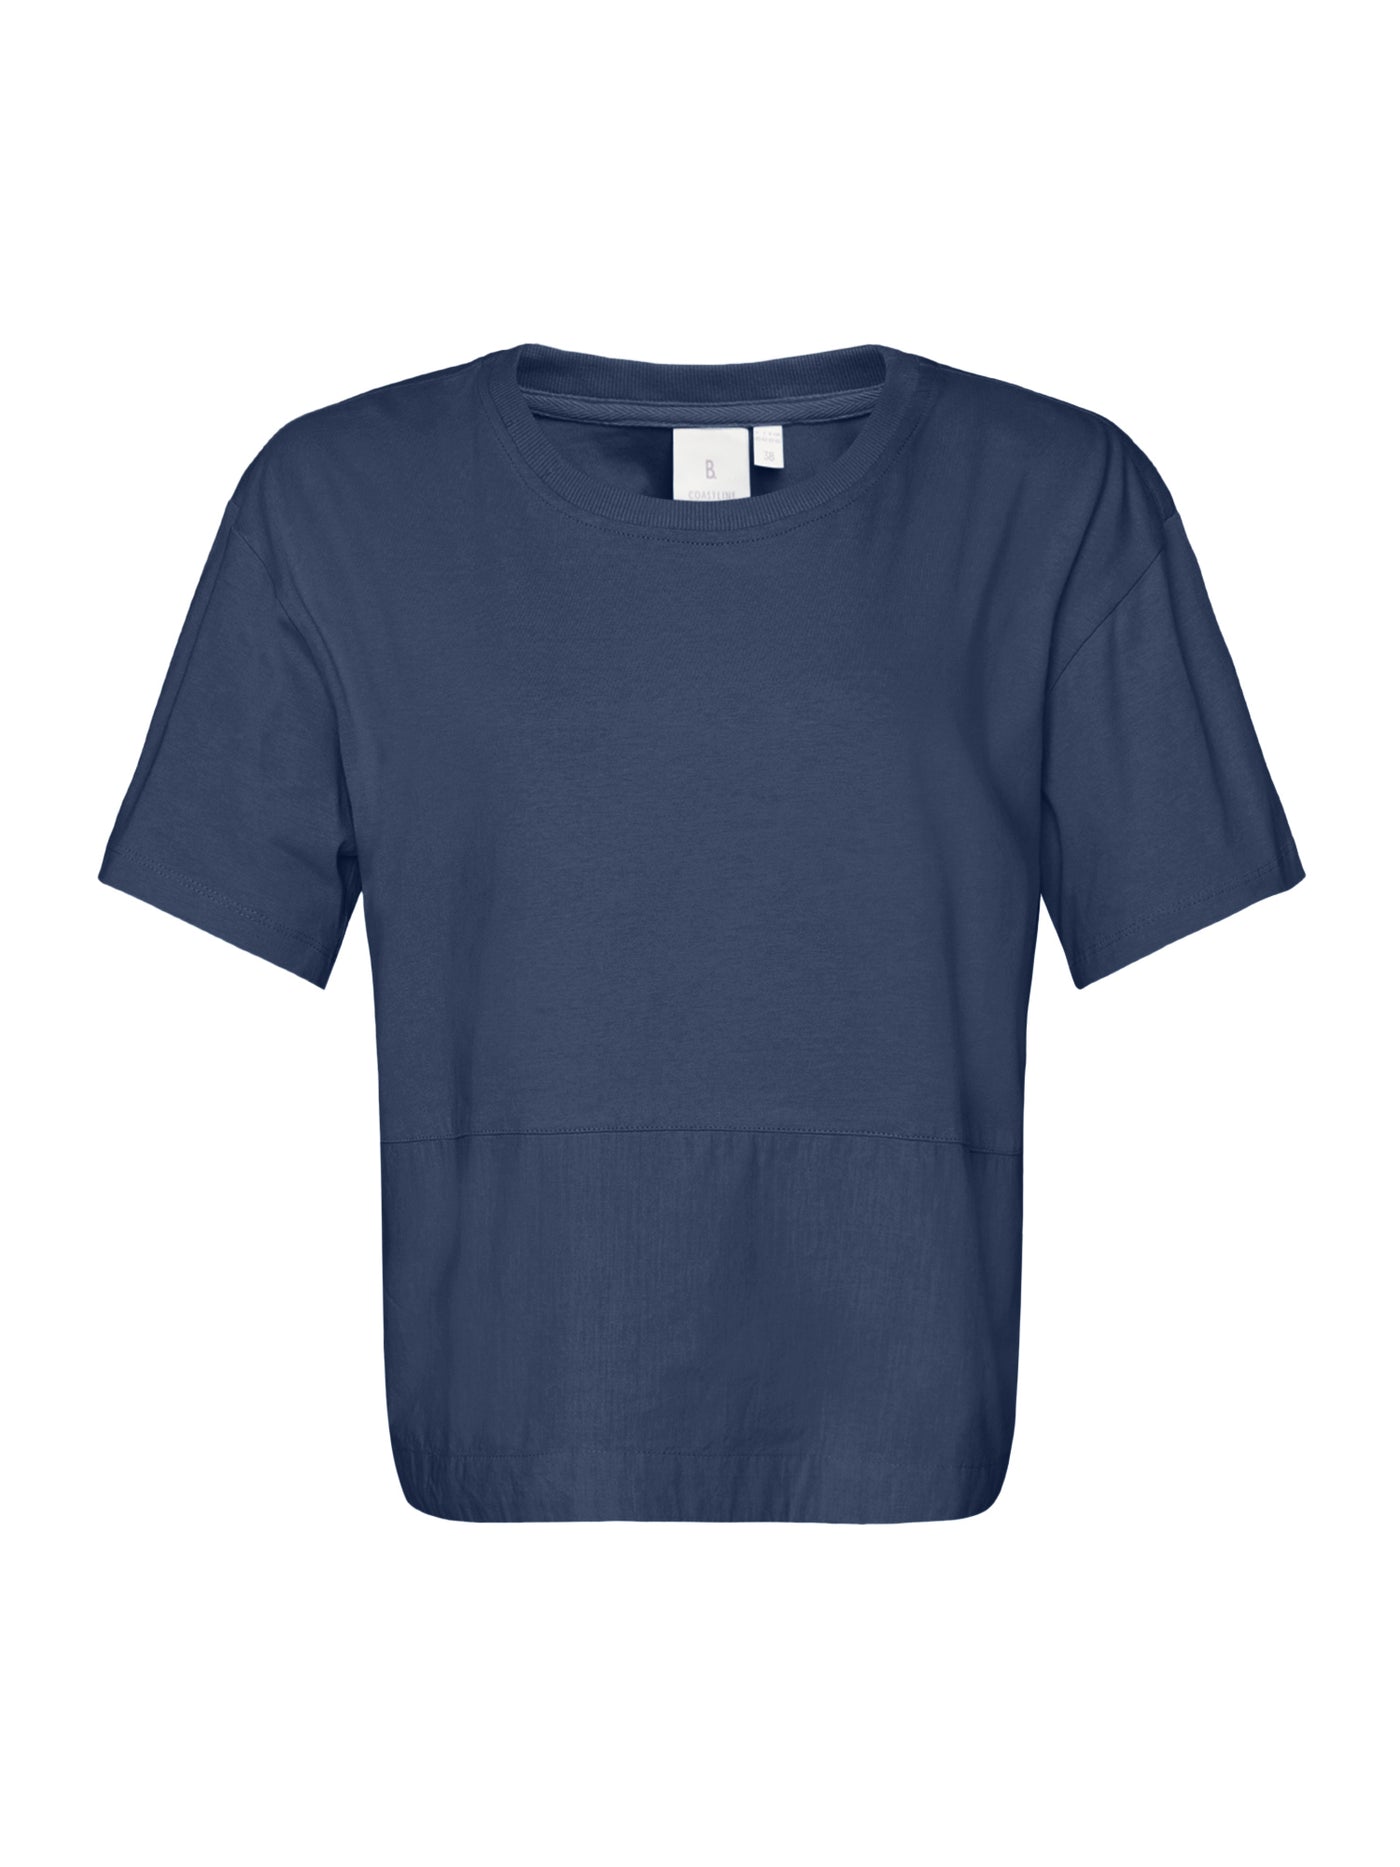 T-shirt - Oceana Blue